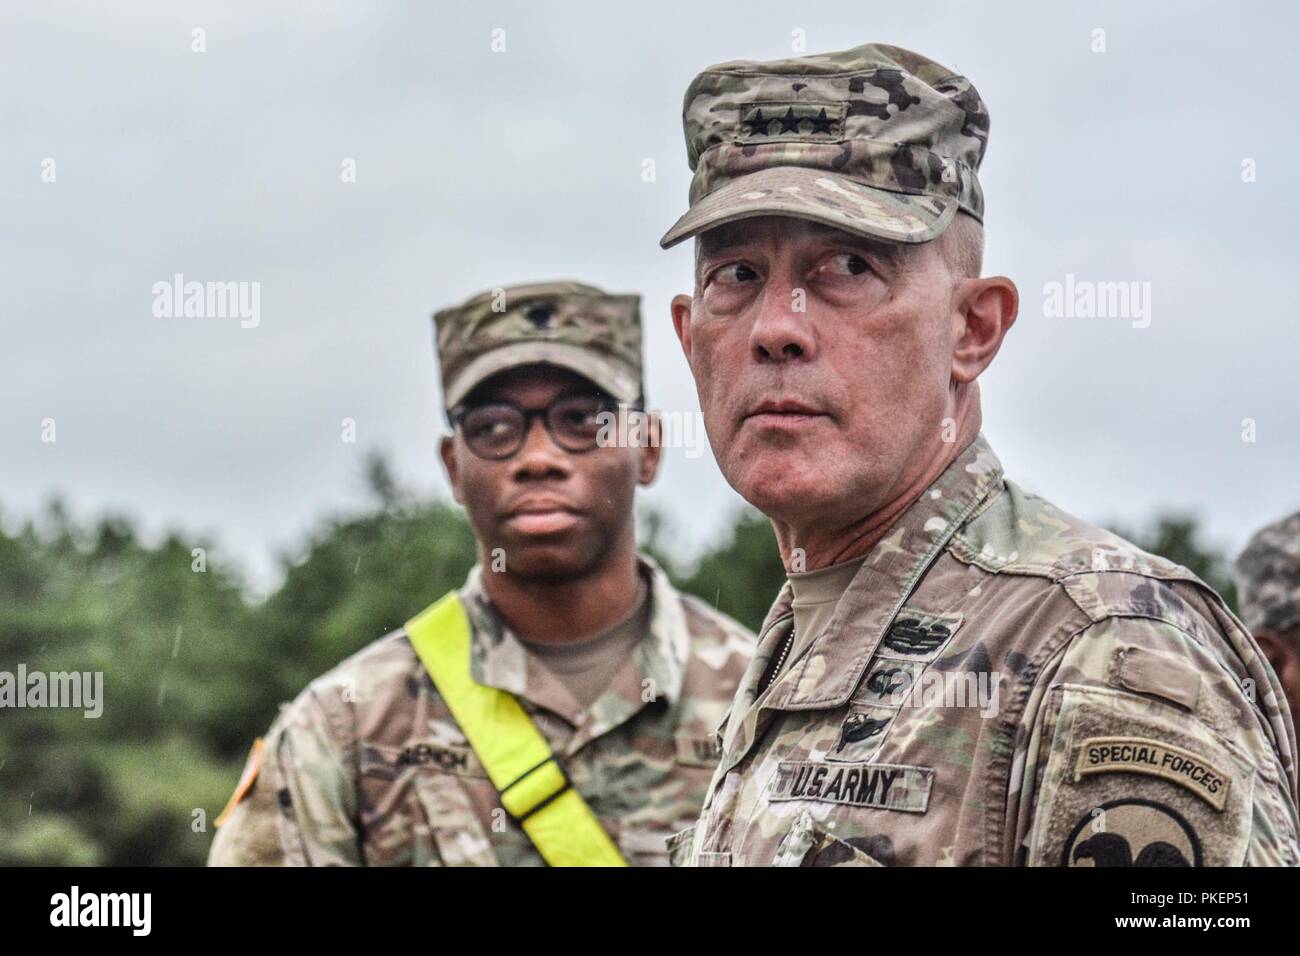 LTG Charles D. Luckey, Jefe de la Reserva del Ejército y el Comandante General del Ejército de los Estados Unidos, comando de Reserva, vistas las operaciones durante el intervalo de Task Force Ultimate, FUNCIONAMIENTO COLD STEEL II, auspiciada por Estados Unidos de asuntos civiles del ejército y el Comando de Operaciones Psicológicas (Airborne), 25 de julio de 2018, en base conjunta Mc-Guire-Dix Lakehurst, New Jersey. Funcionamiento Cold Steel es la Reserva del Ejército estadounidense de la tripulación sirve de armas de cualificación y validación para garantizar el ejercicio de América del Ejército las unidades de reserva y los soldados están entrenados y listos para su implementación en el corto plazo como parte de Ready Force X y llevar listas para combatir y mortífero poder de fuego en apoyo de Foto de stock